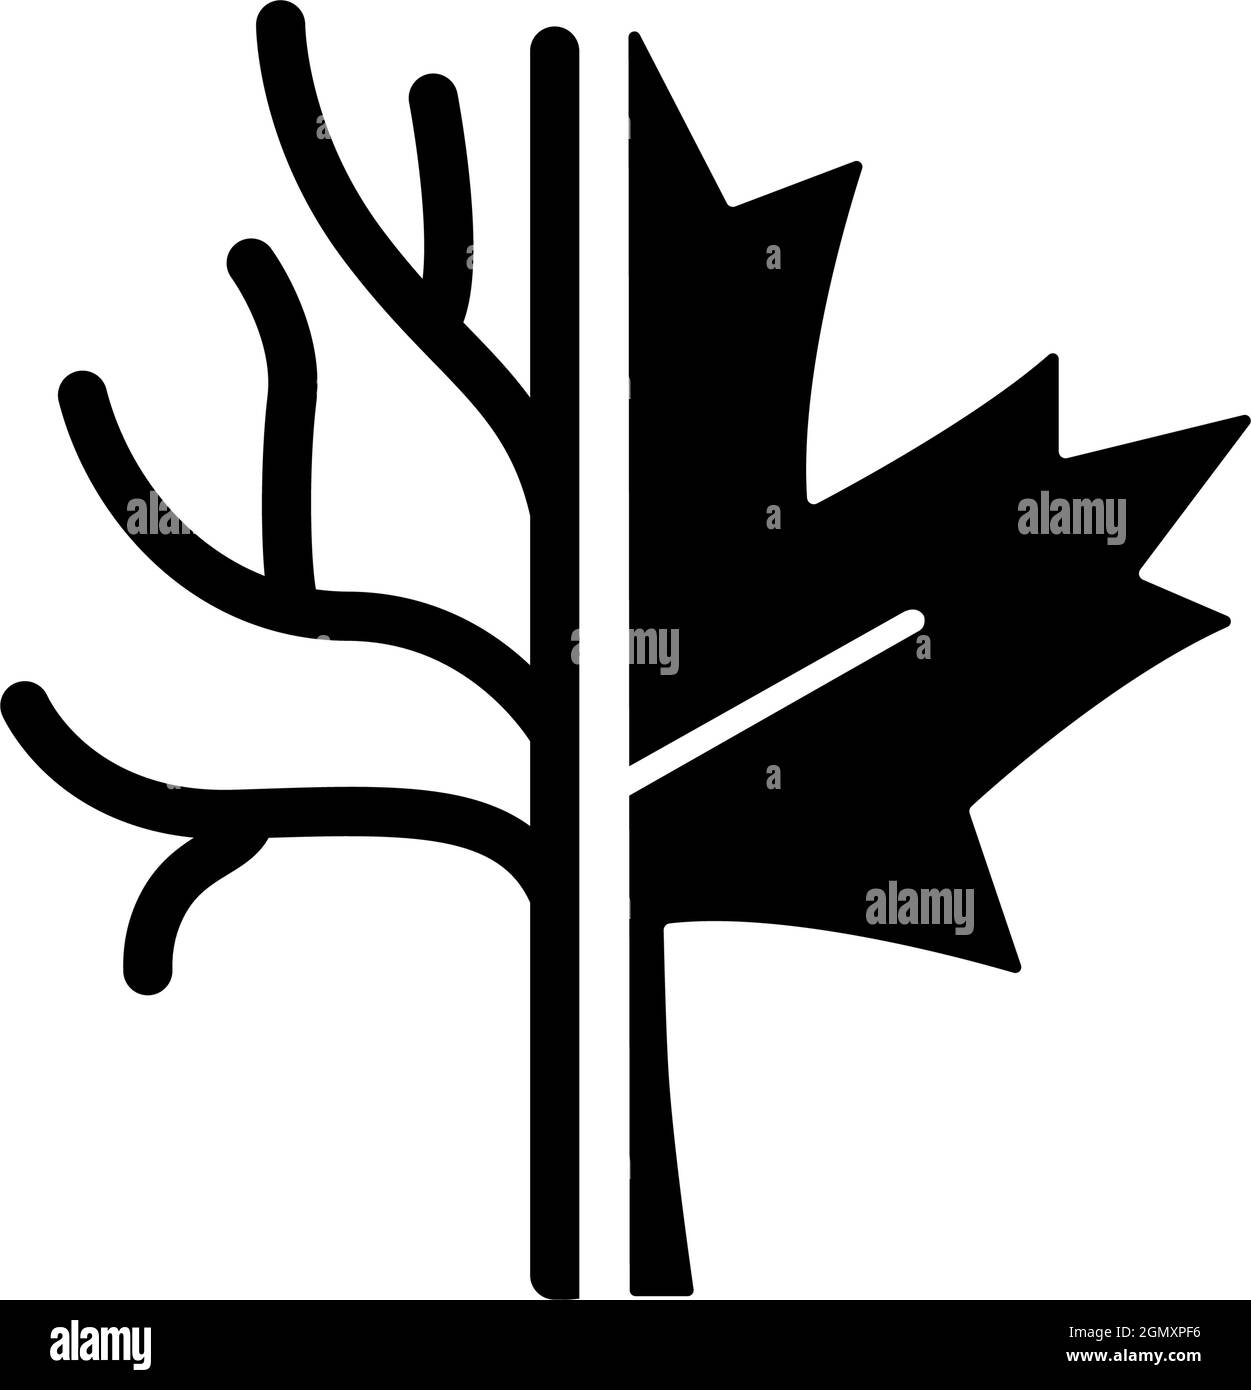 Maple tree black glyph icon Stock Vector